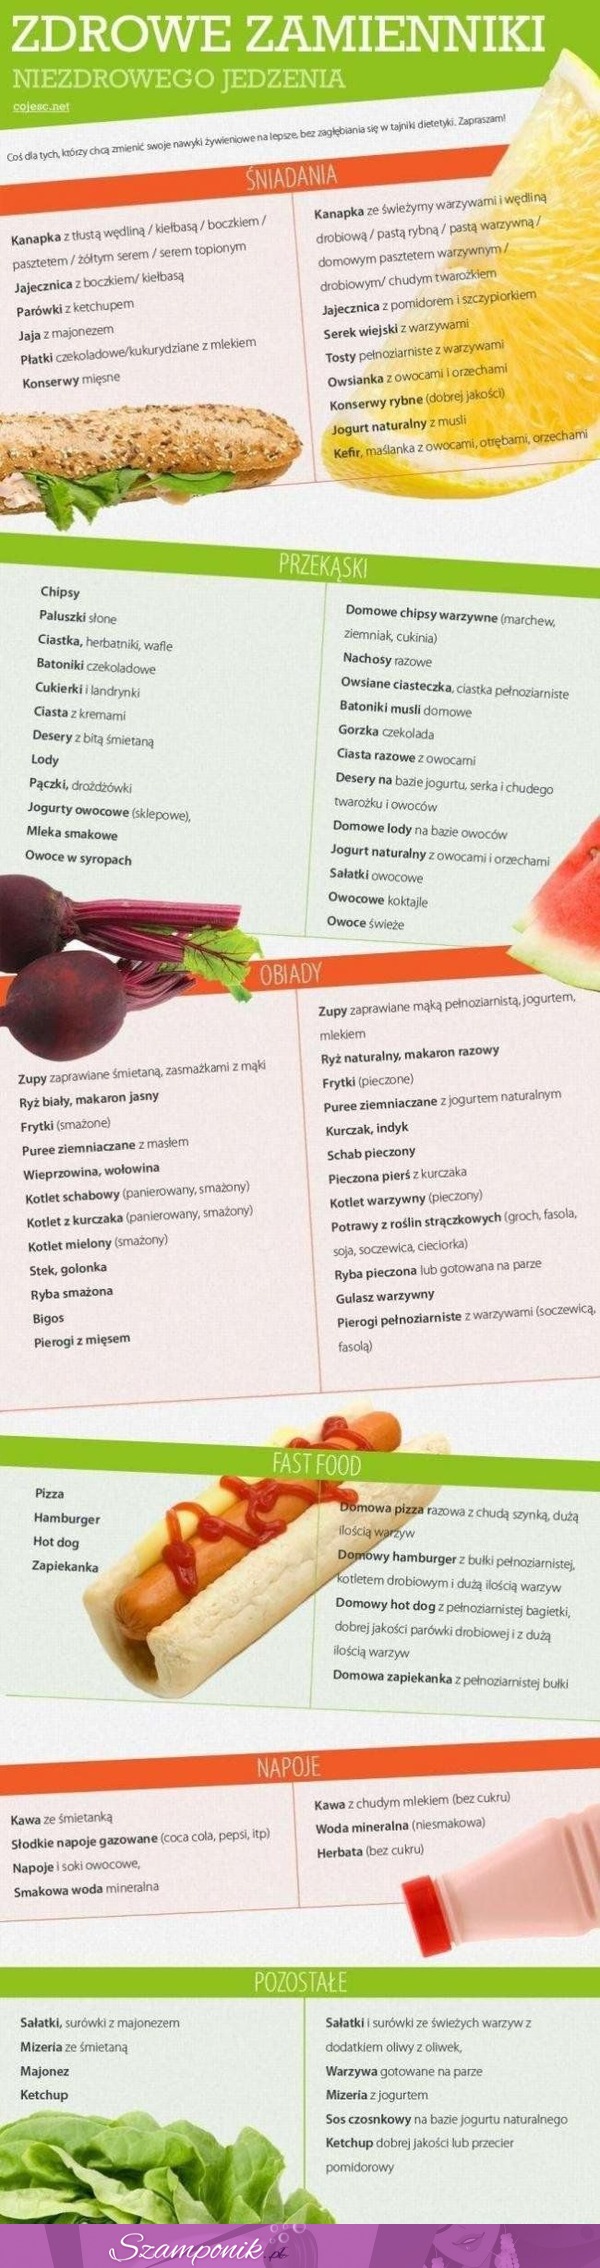 Zobacz zdrowie zamienniki niezdrowego jedzenia!